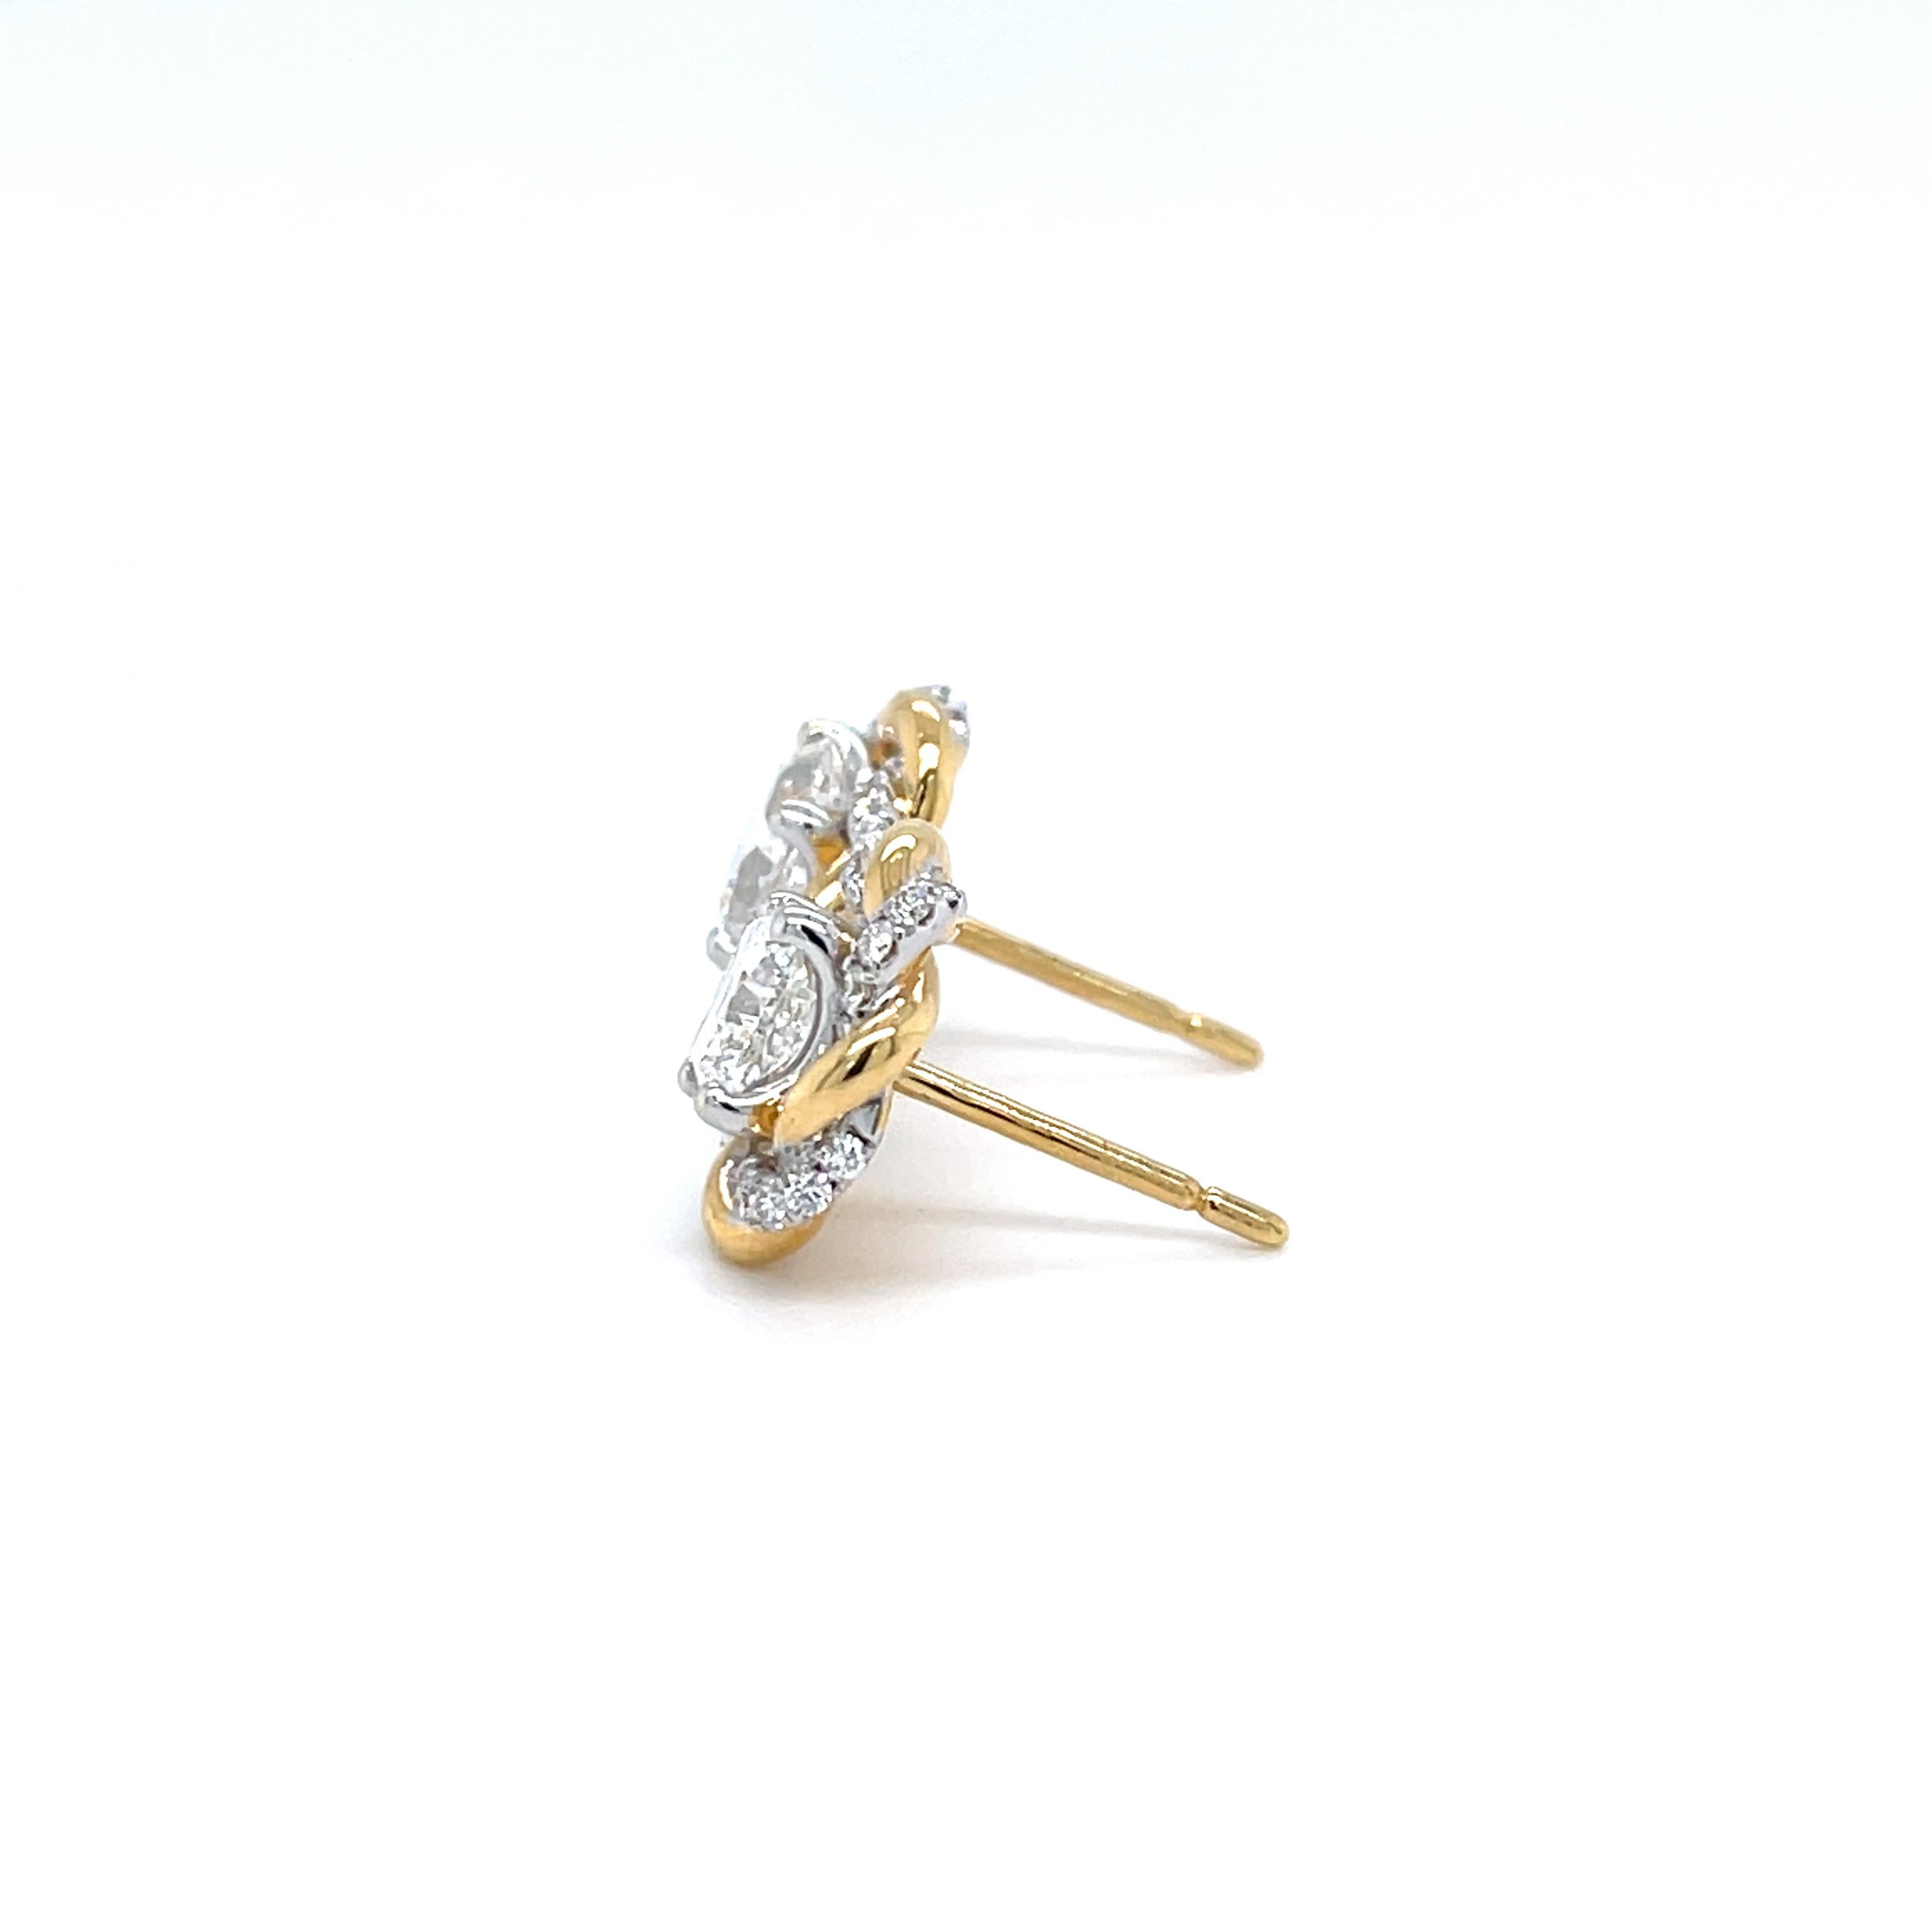 Sparkling Squared: Diamantohrringe mit 2,02 Karat in 18K Gelbgold (GIA zertifiziert)

Lassen Sie sich von der zeitgenössischen Eleganz dieses bezaubernden Paares von Diamantohrsteckern verzaubern. Mit zwei quadratischen Diamanten im Strahlenschliff